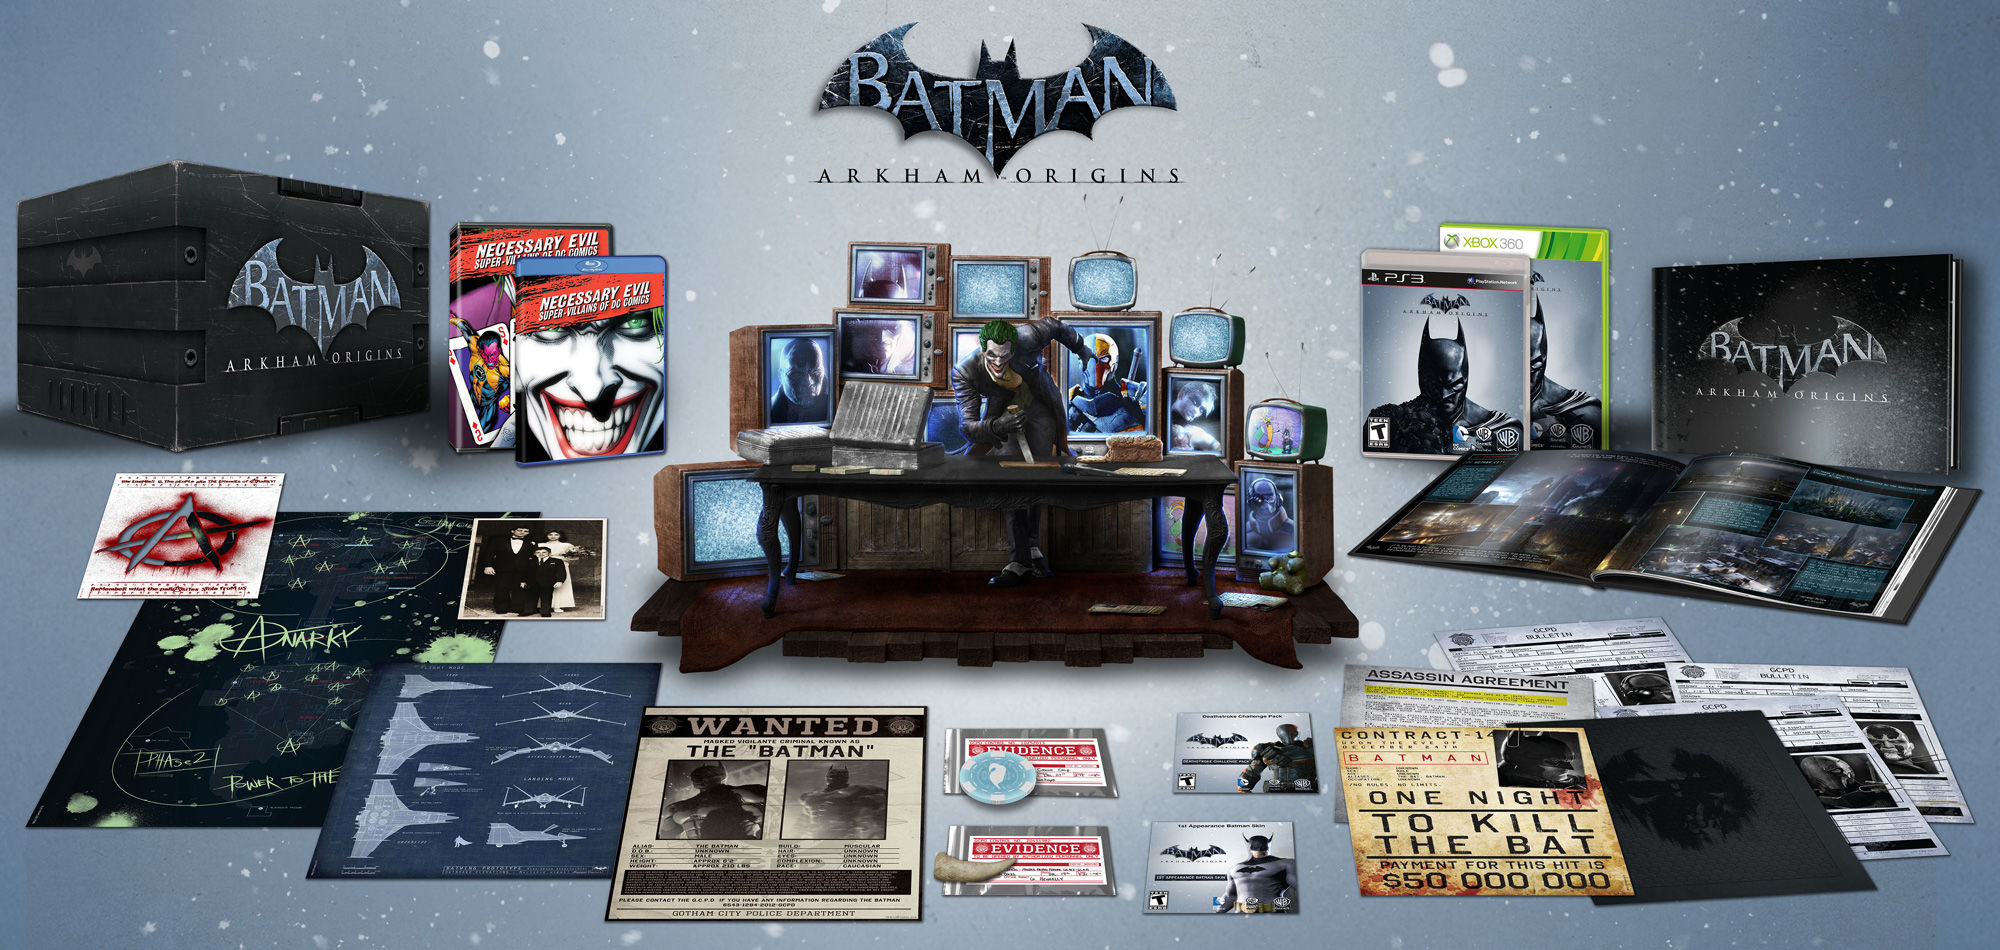 Batman Arkham Origins - Special Editions Revealed | Batman: Arkham Origins